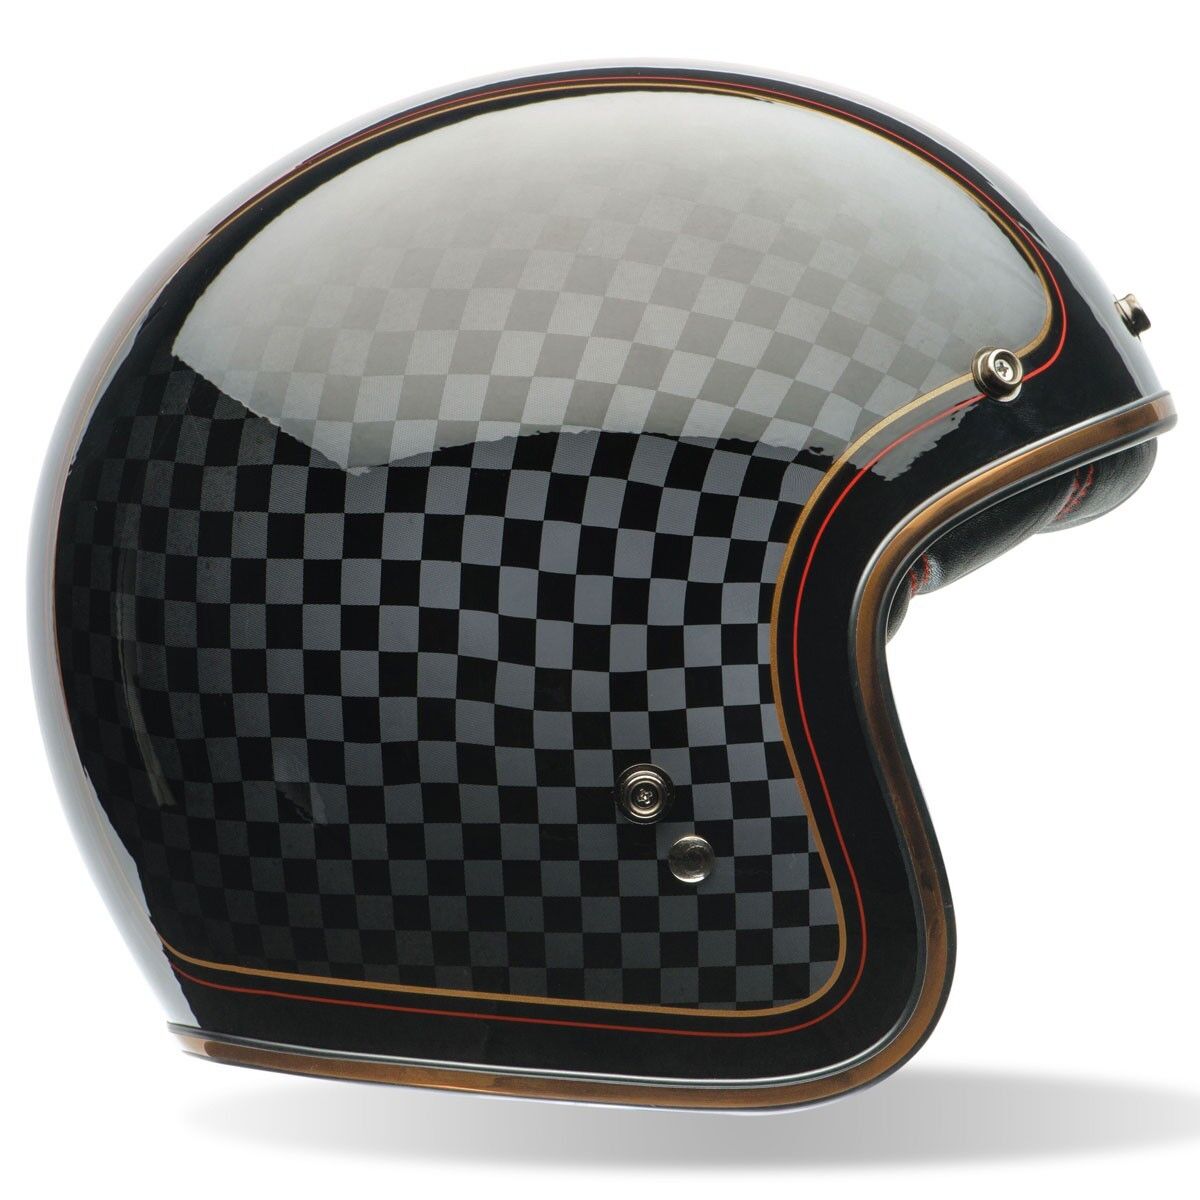 Bell Custom 500 Helmet - RSD Check it Black